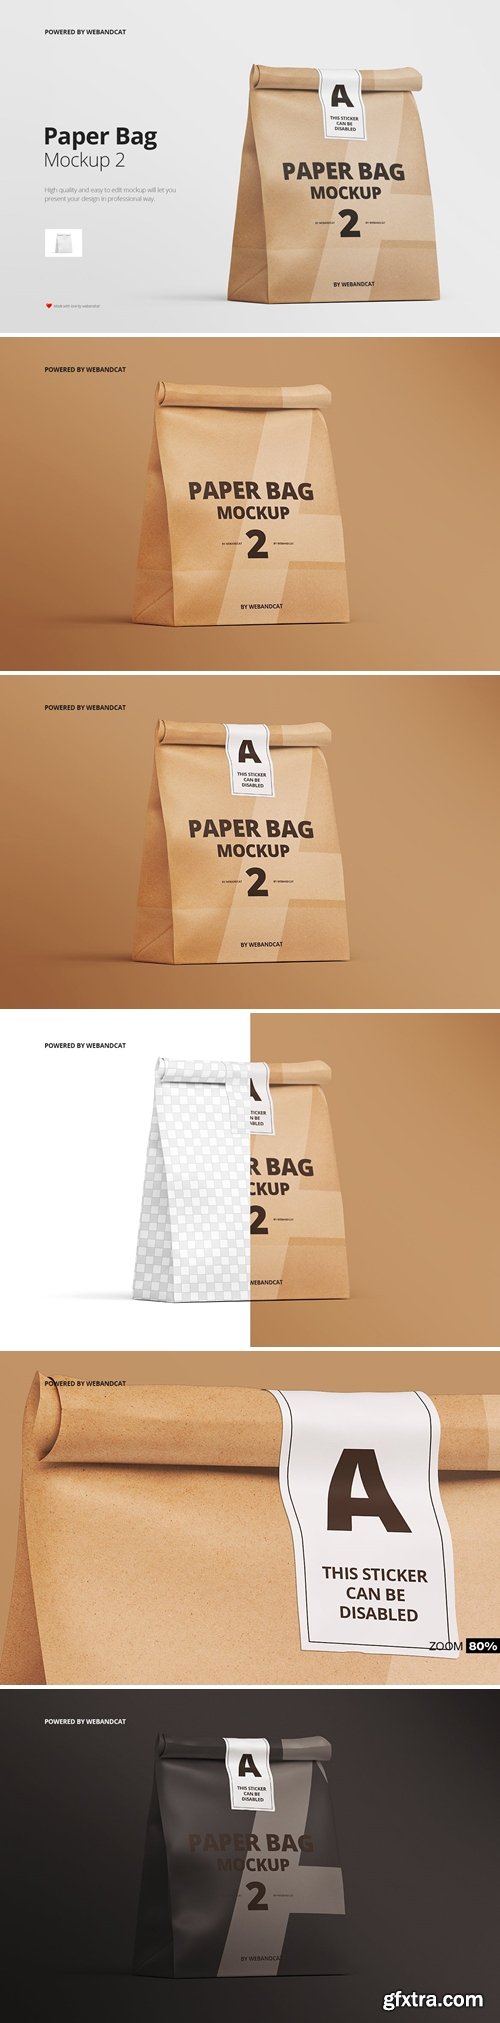 Paper Food Bag Mockup